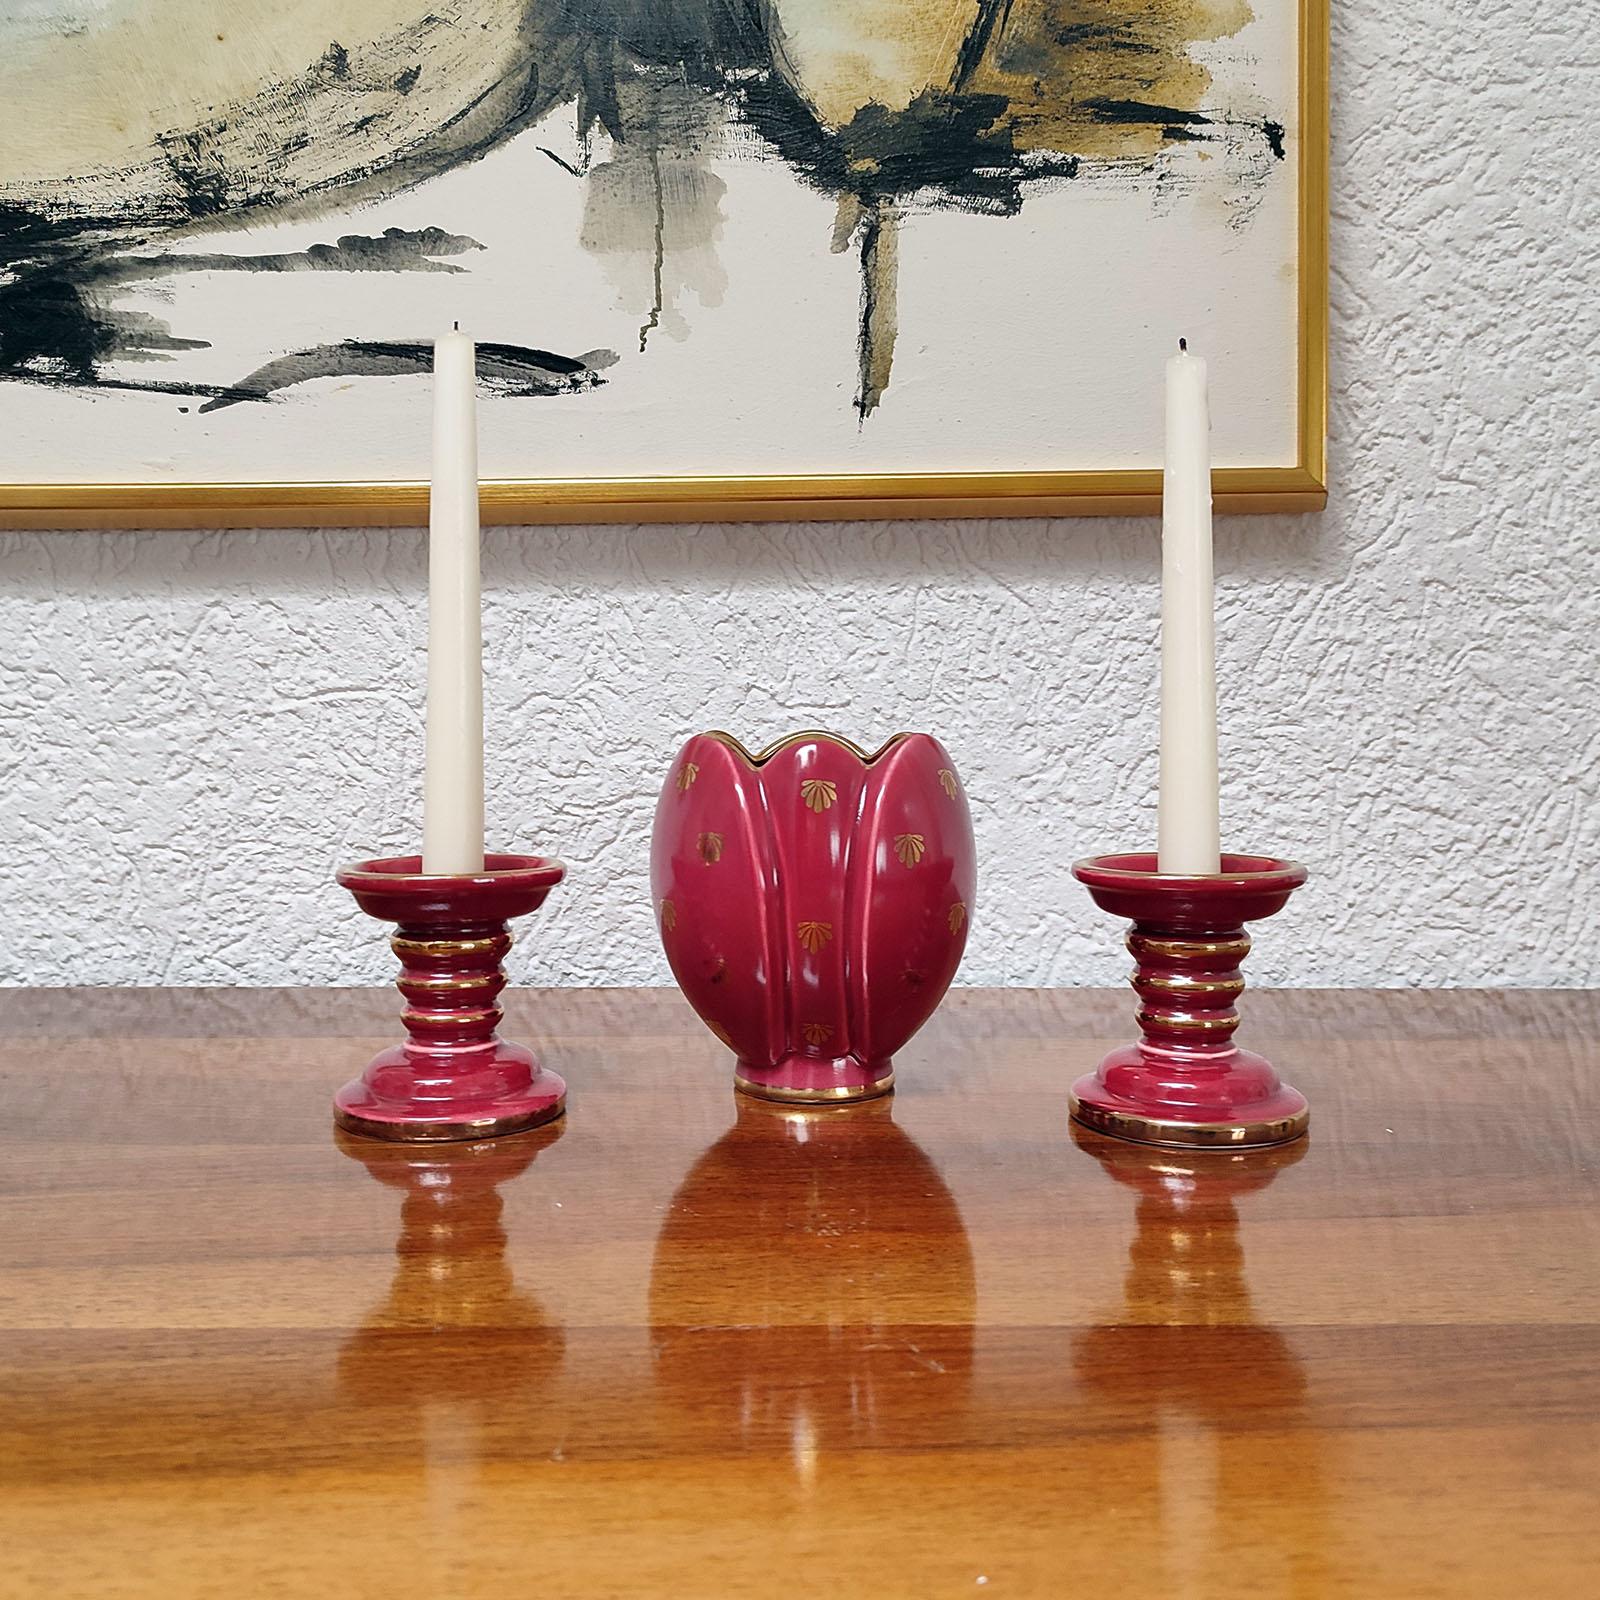 Rotes Rubin-Keramikset mit roter Glasur, vergoldet, Upsala-Ekeby, Gefle. Design Arthur Percy.
Bestehend aus einer Vase und einem Paar Kerzenhalter. Perfekter Zustand. Jeweils mit Herstellermarke auf der Unterseite gekennzeichnet. Vase mit